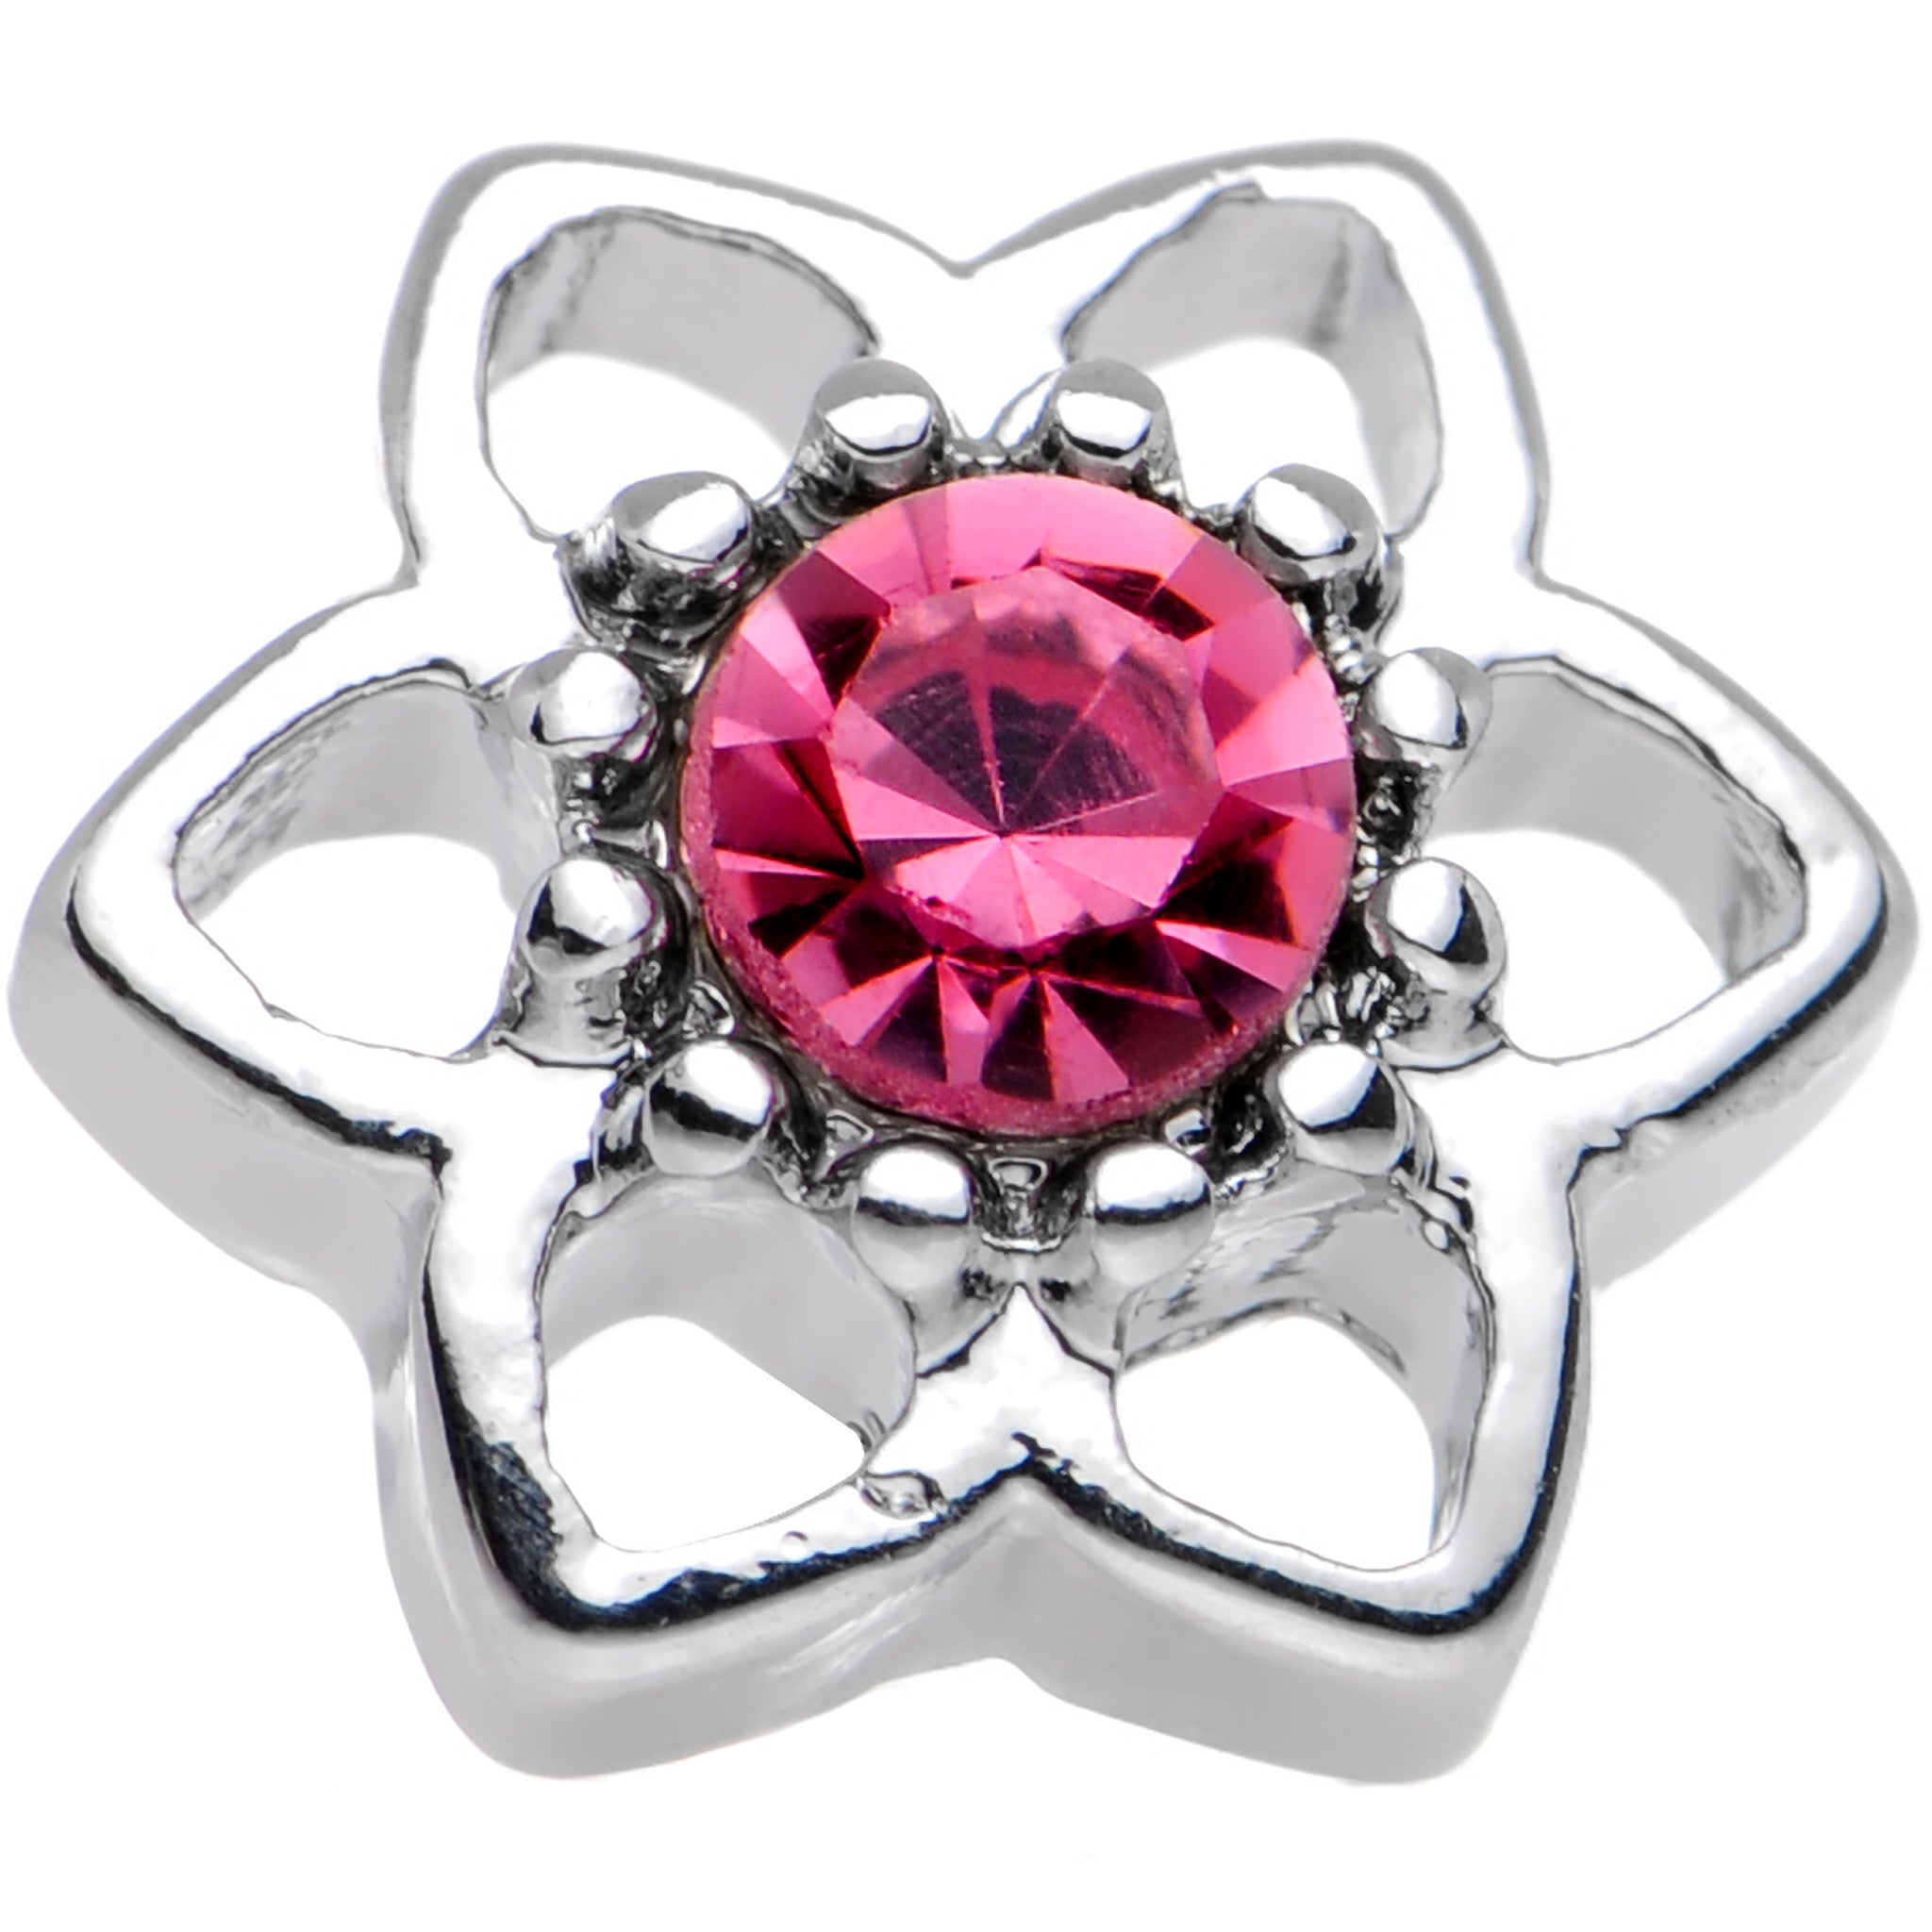 16 Gauge 7mm Pink Gem Petaled Flower Cartilage Earring